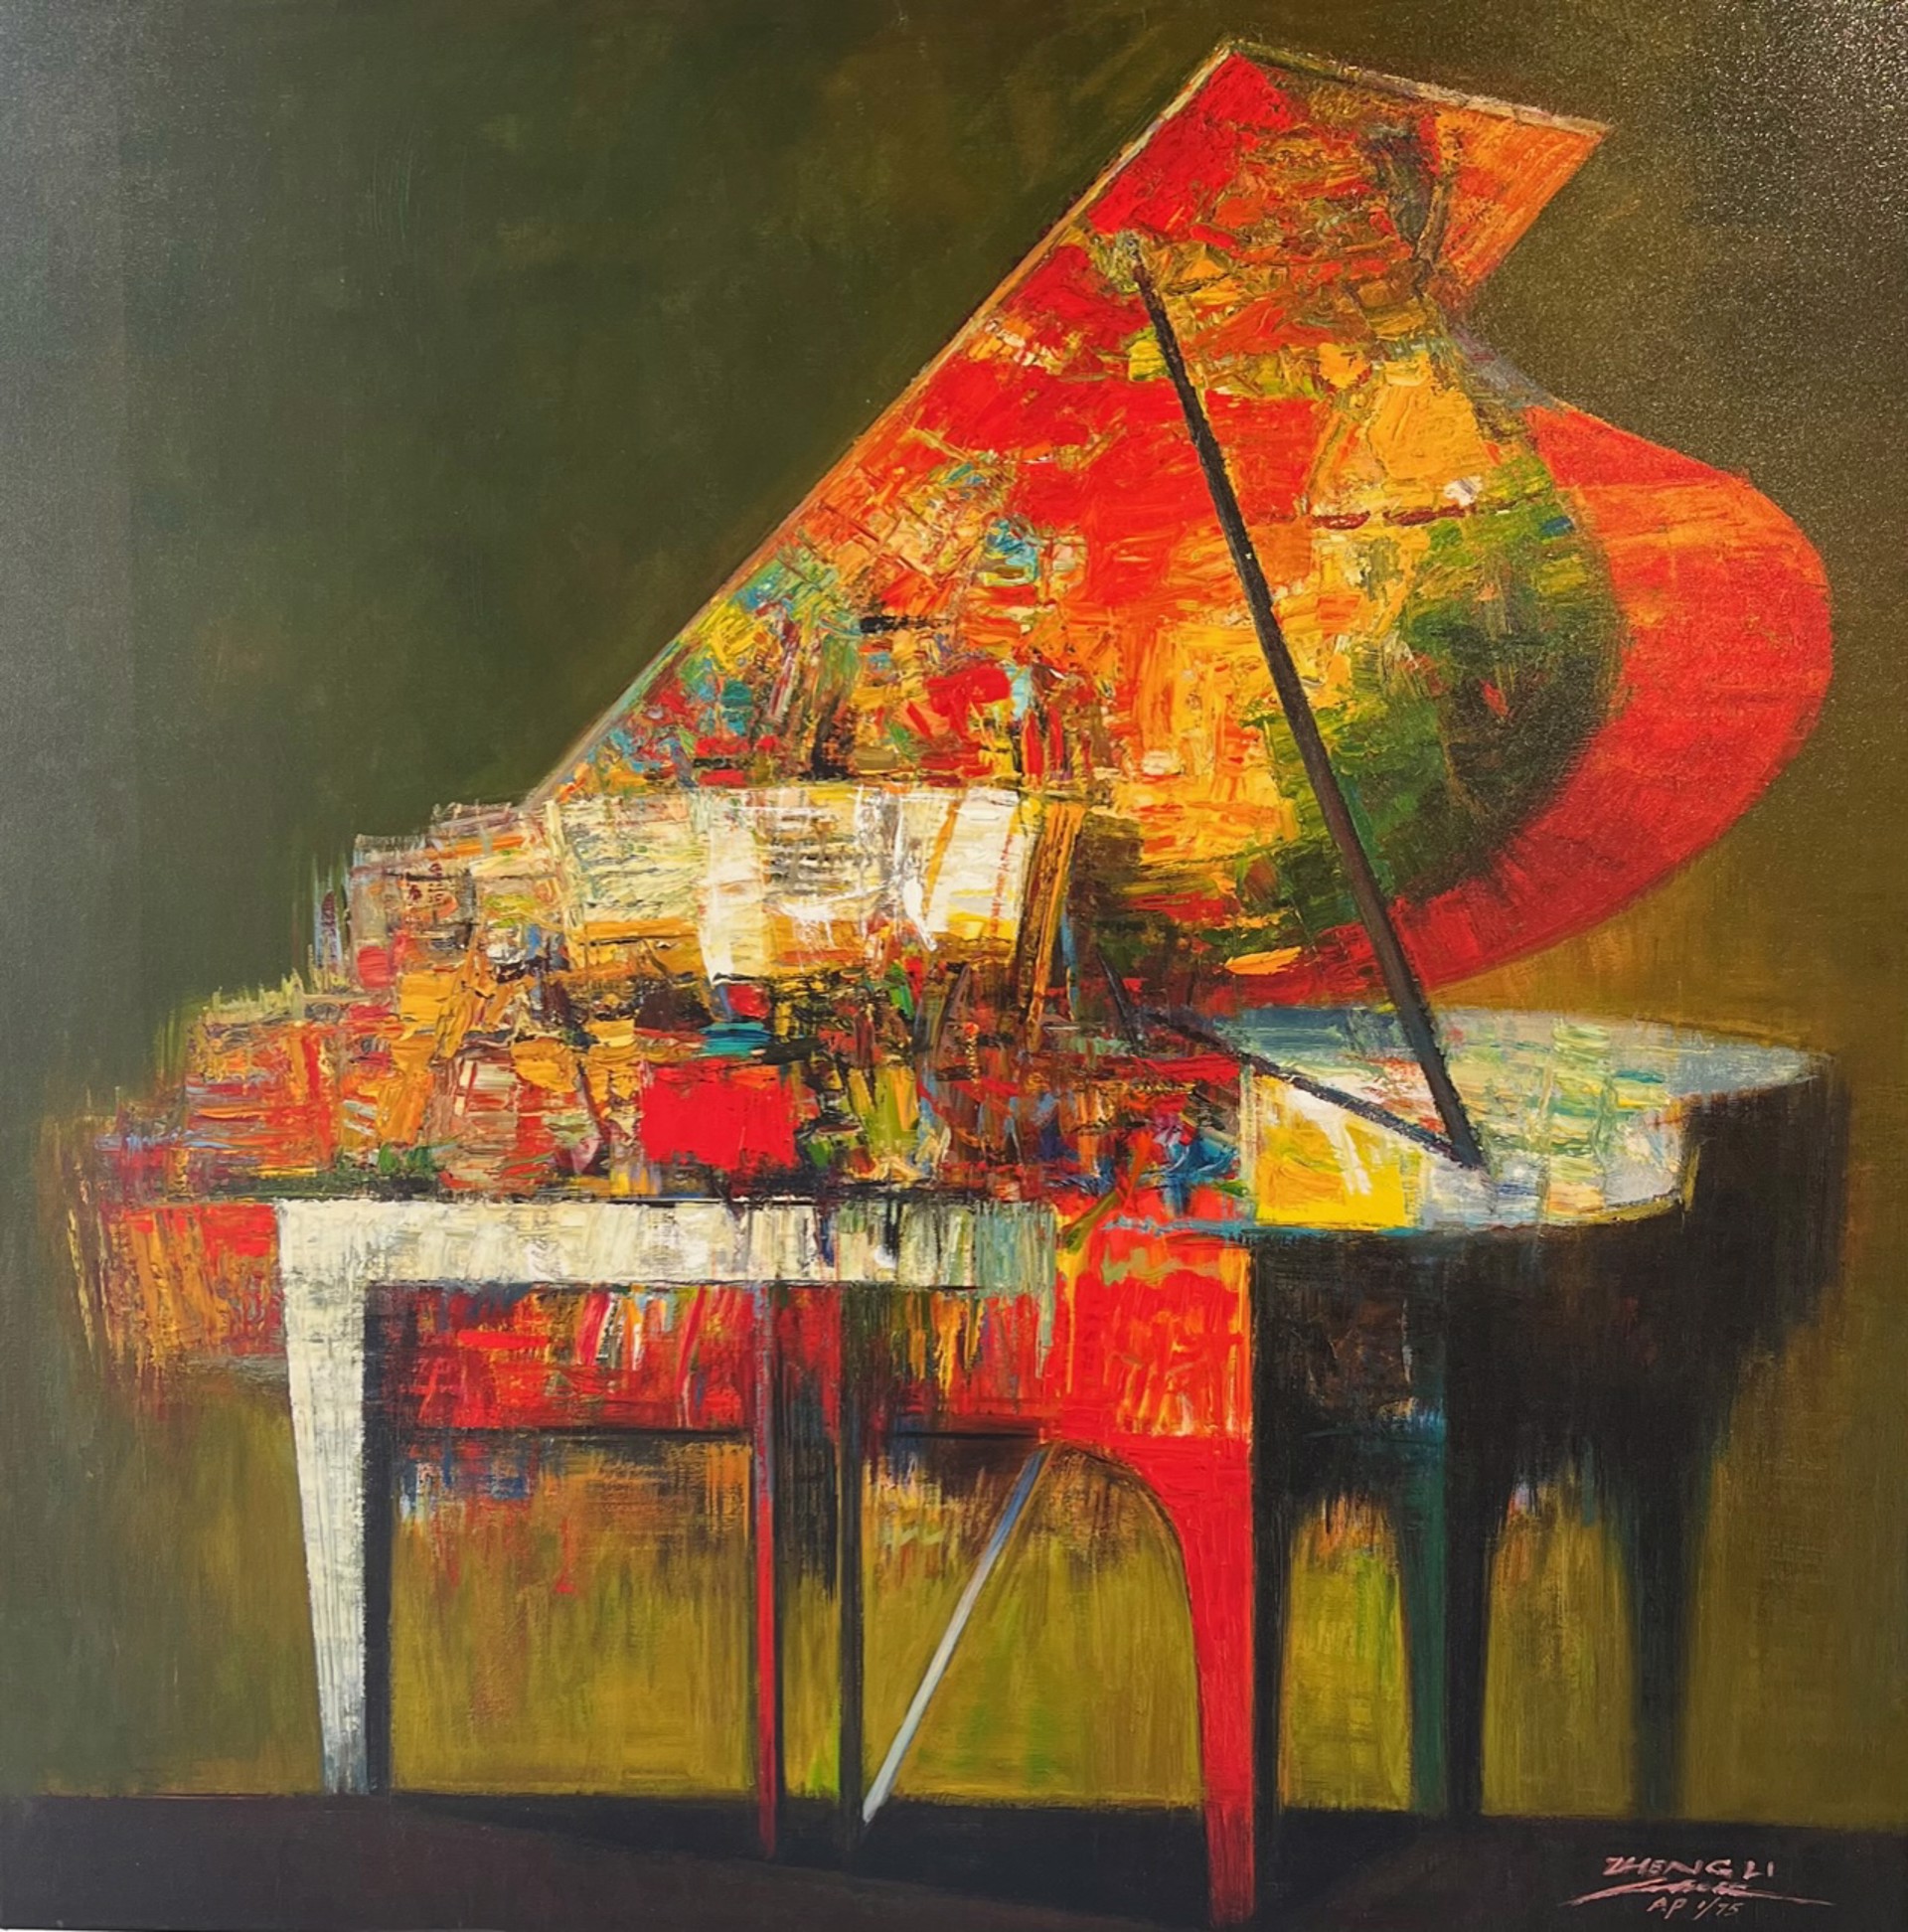 Piano (Green Teal) by ZHENG LI